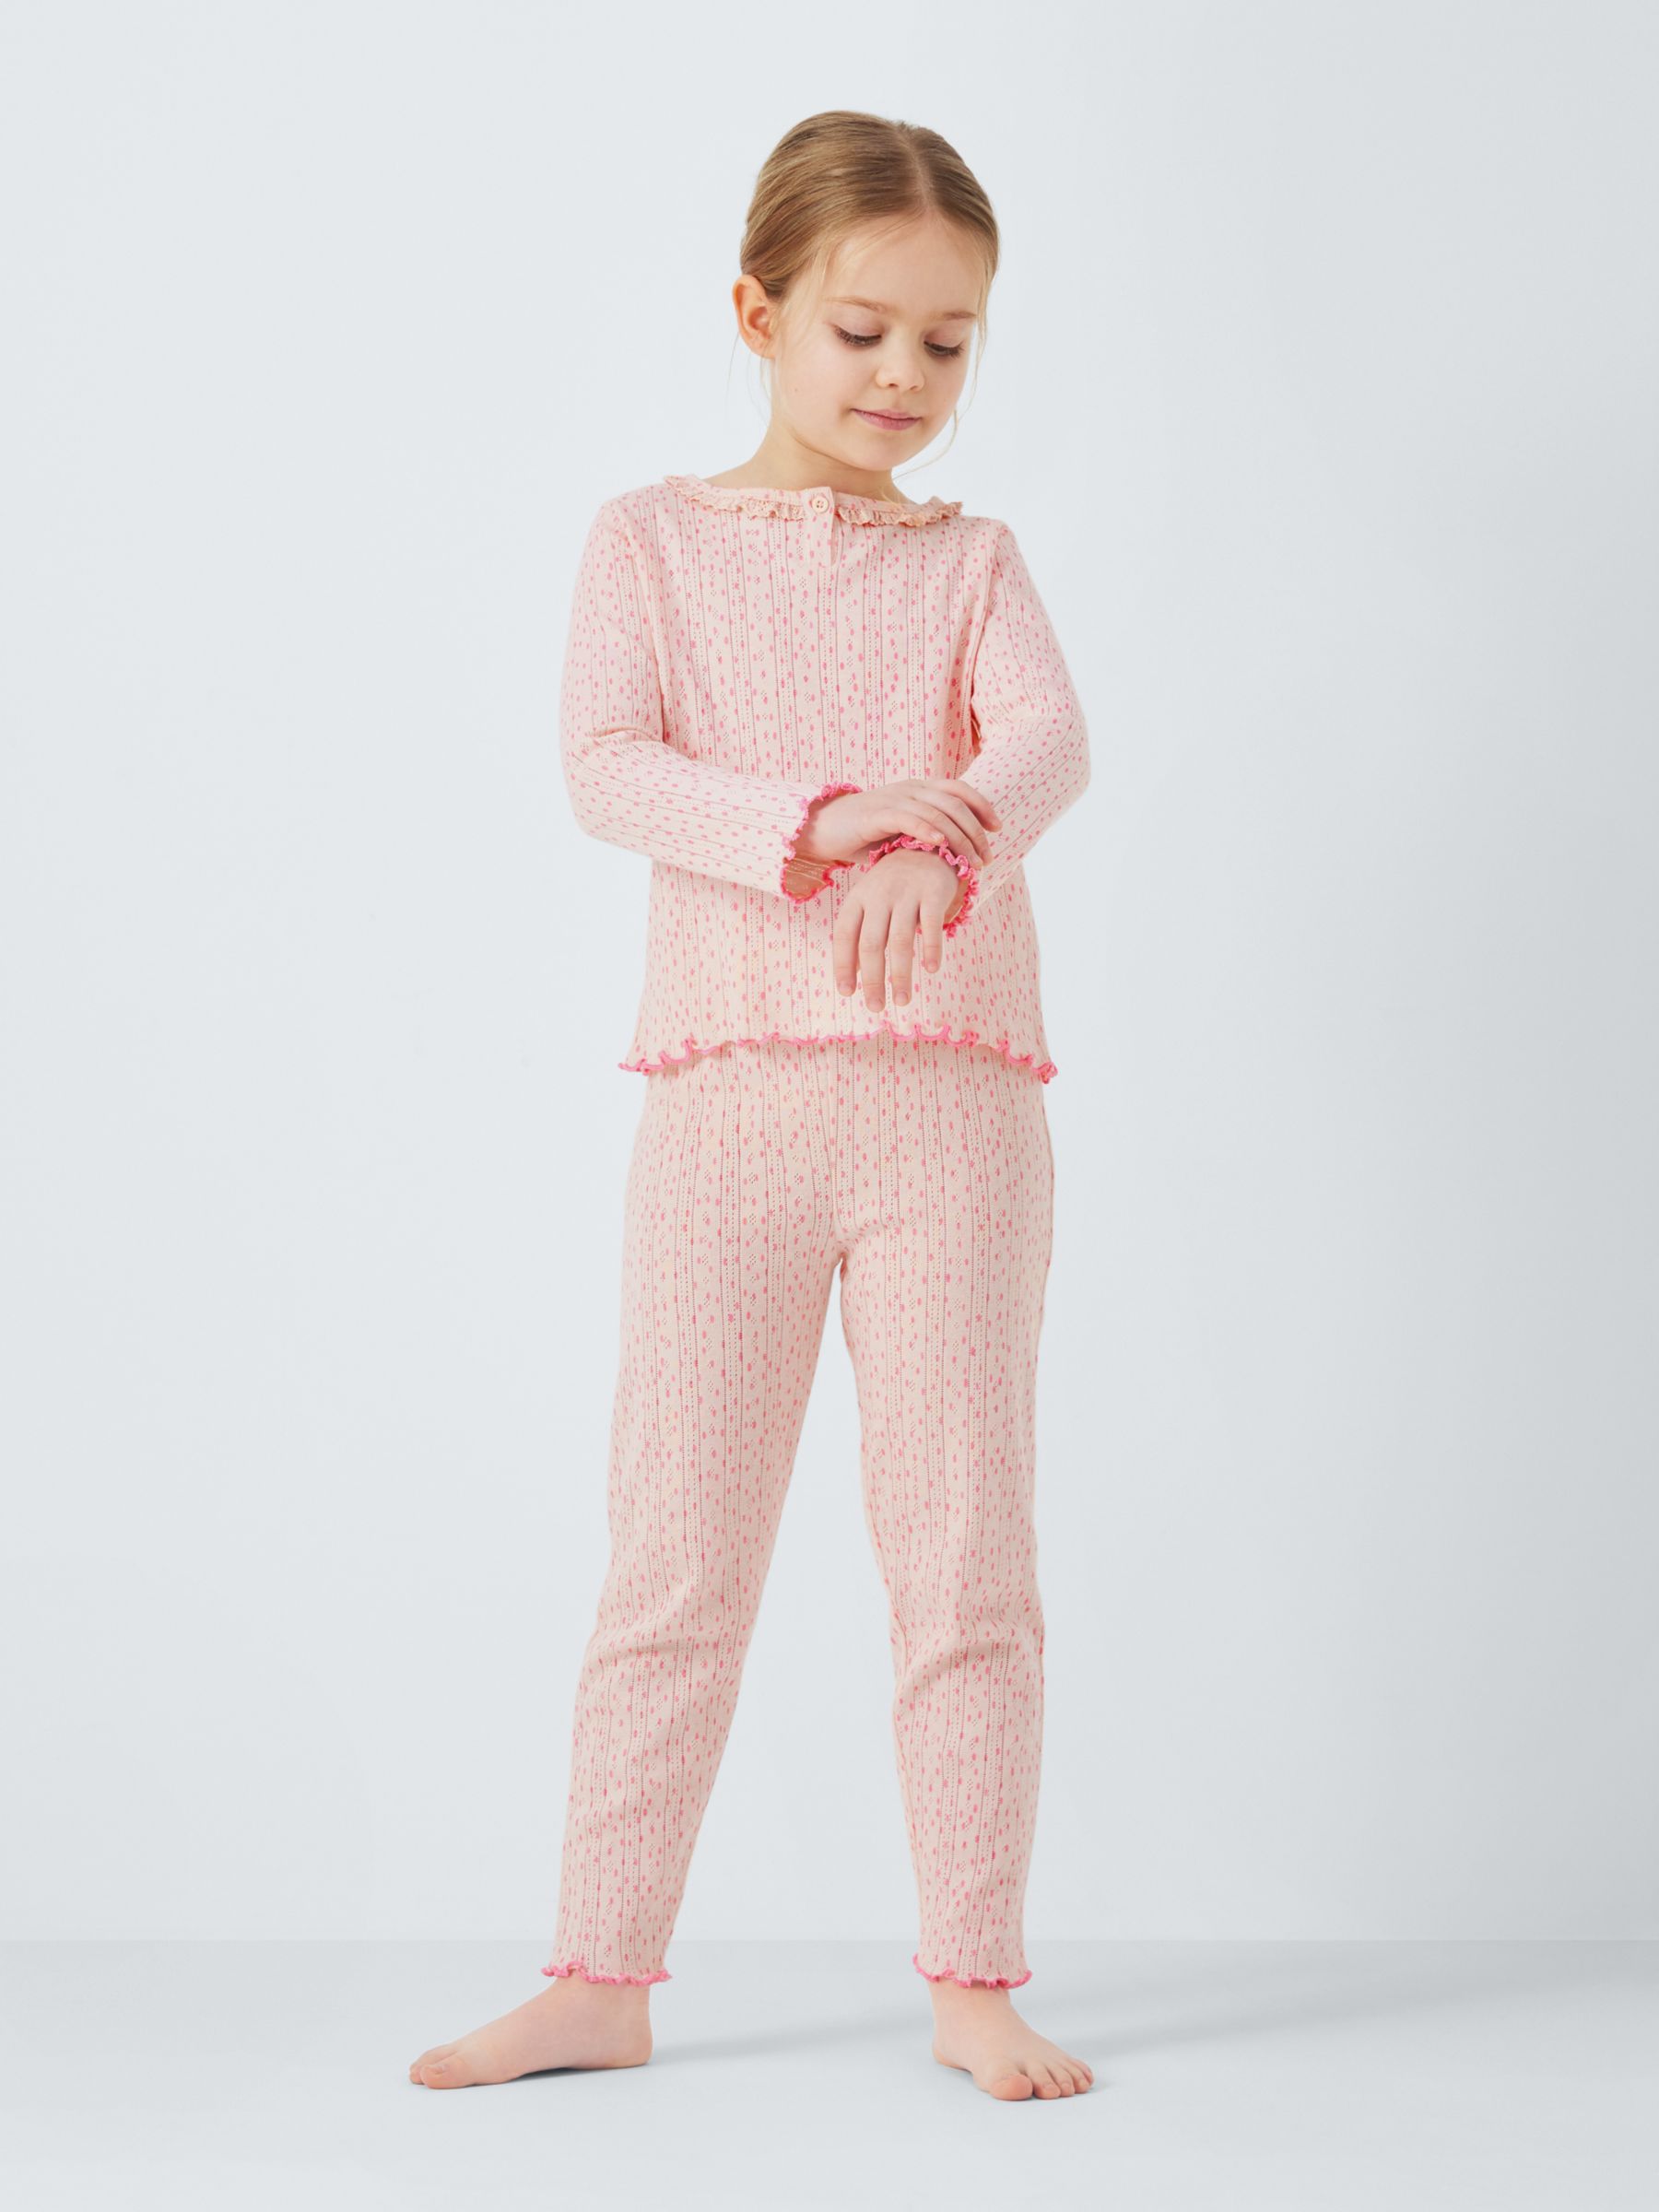 John Lewis Kids' Pointelle Henley Frill Pyjamas, Pink, 13 years